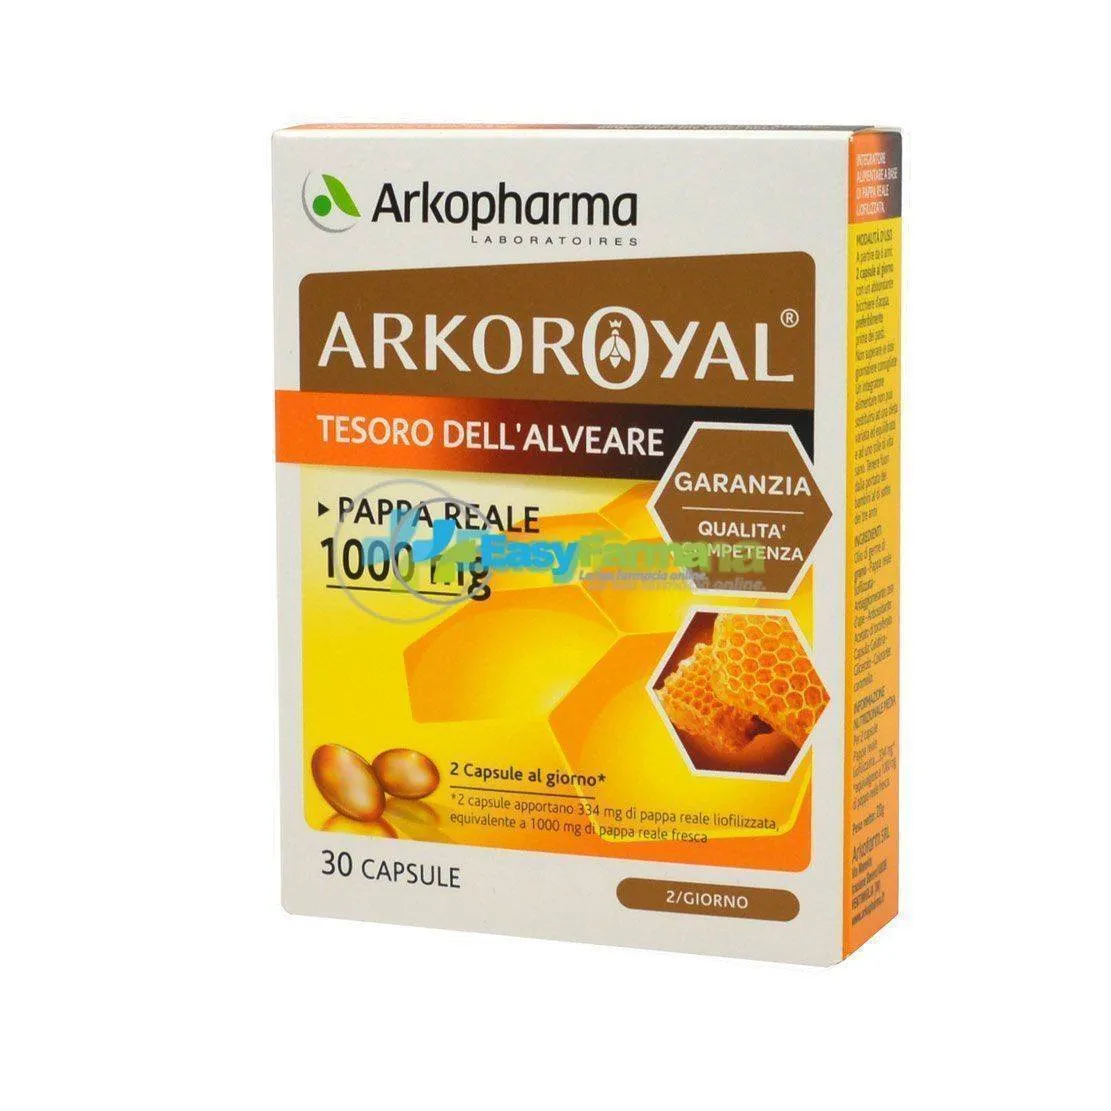 Arkopharma Arkoroyal Tesoro Dell'Alveare 30 Capsule Con Pappa Reale -  Prodotti Momentaneamente Non Disponibili